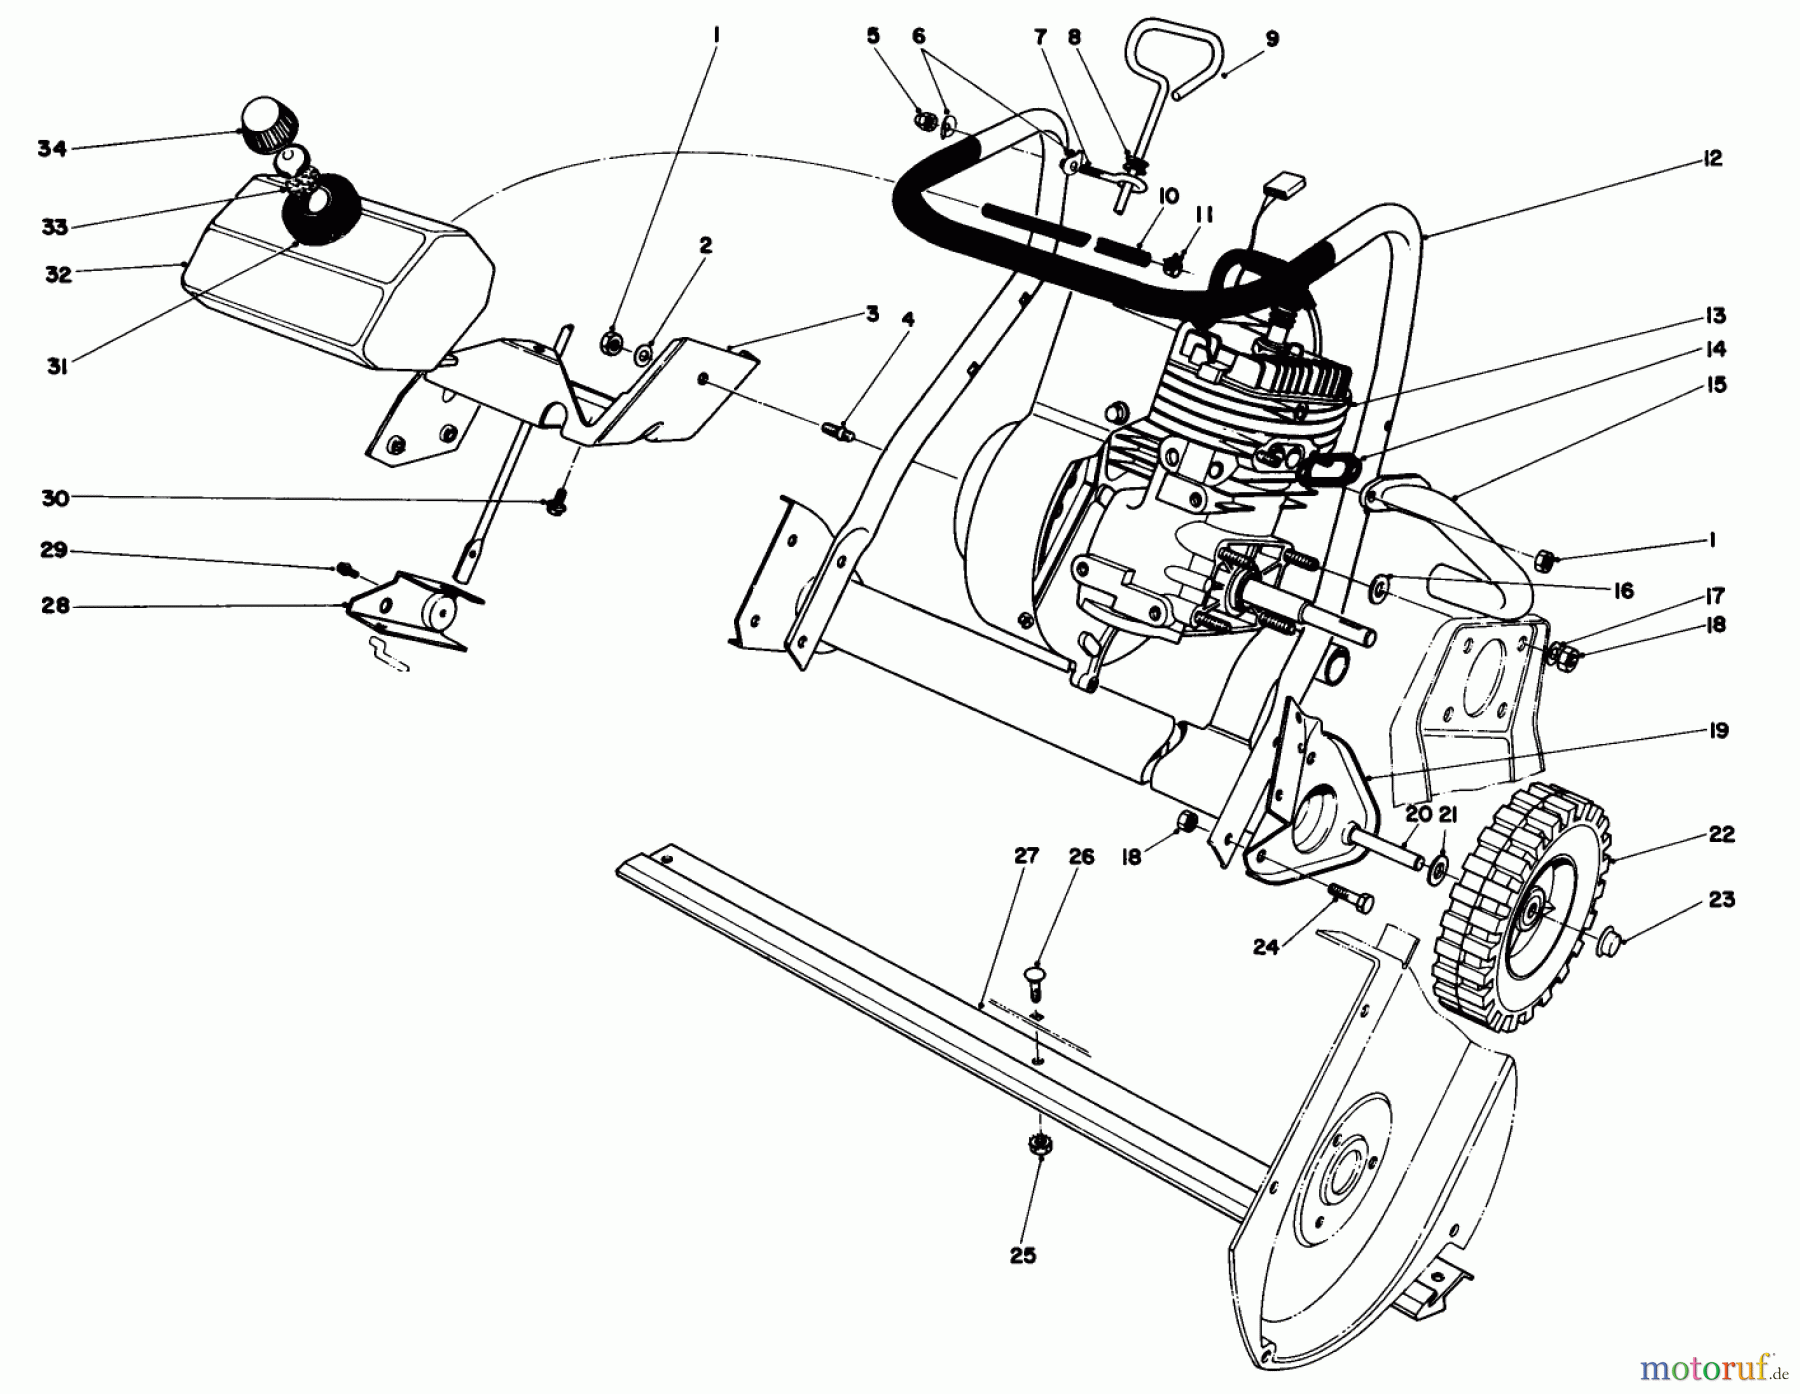  Toro Neu Snow Blowers/Snow Throwers Seite 1 38232 (S-200) - Toro S-200 Snowthrower, 1984 (4000001-4999999) ENGINE ASSEMBLY